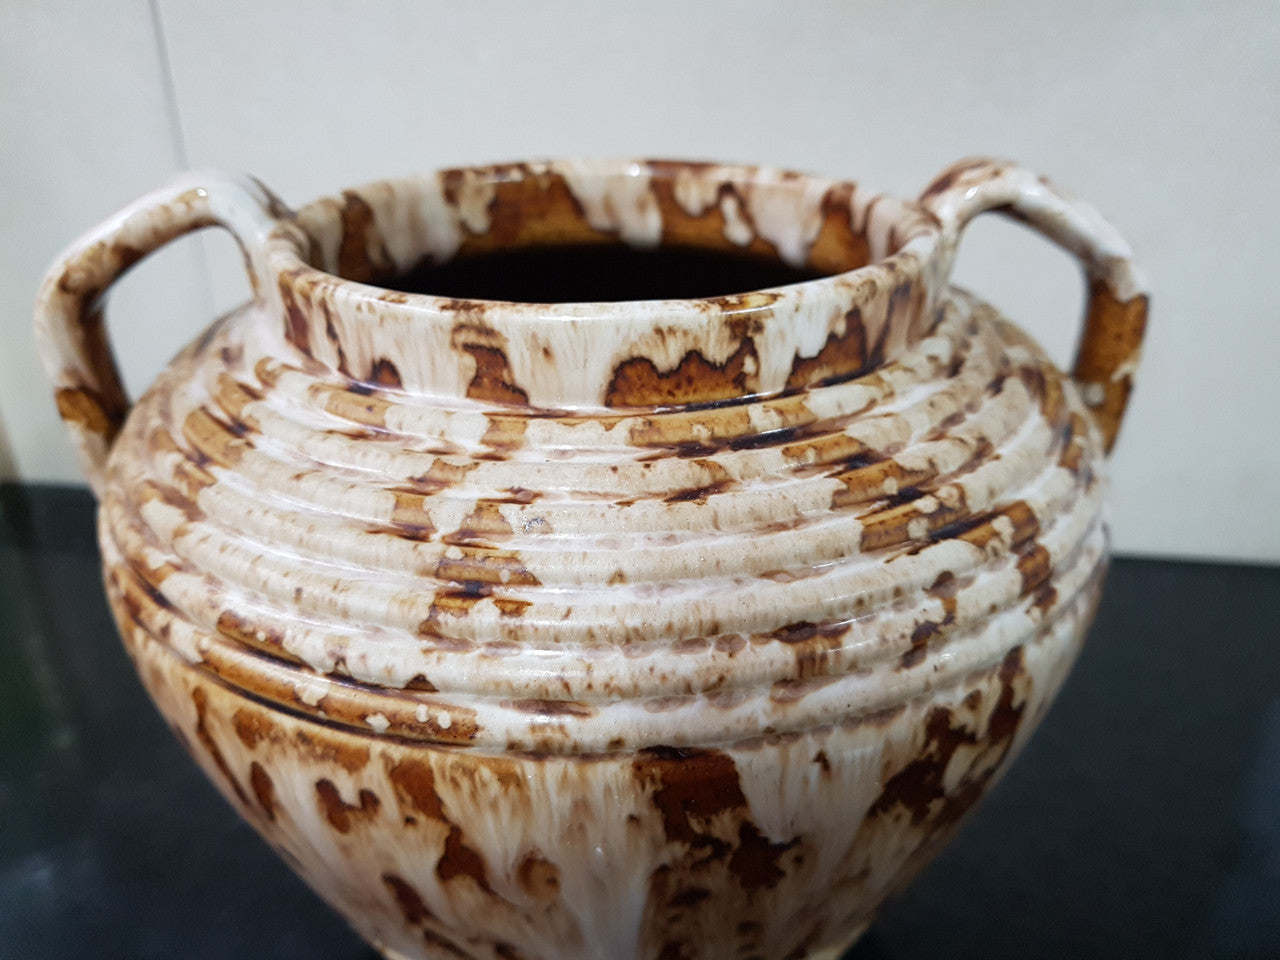 Early Bendigo Pottery Double Handled Vase